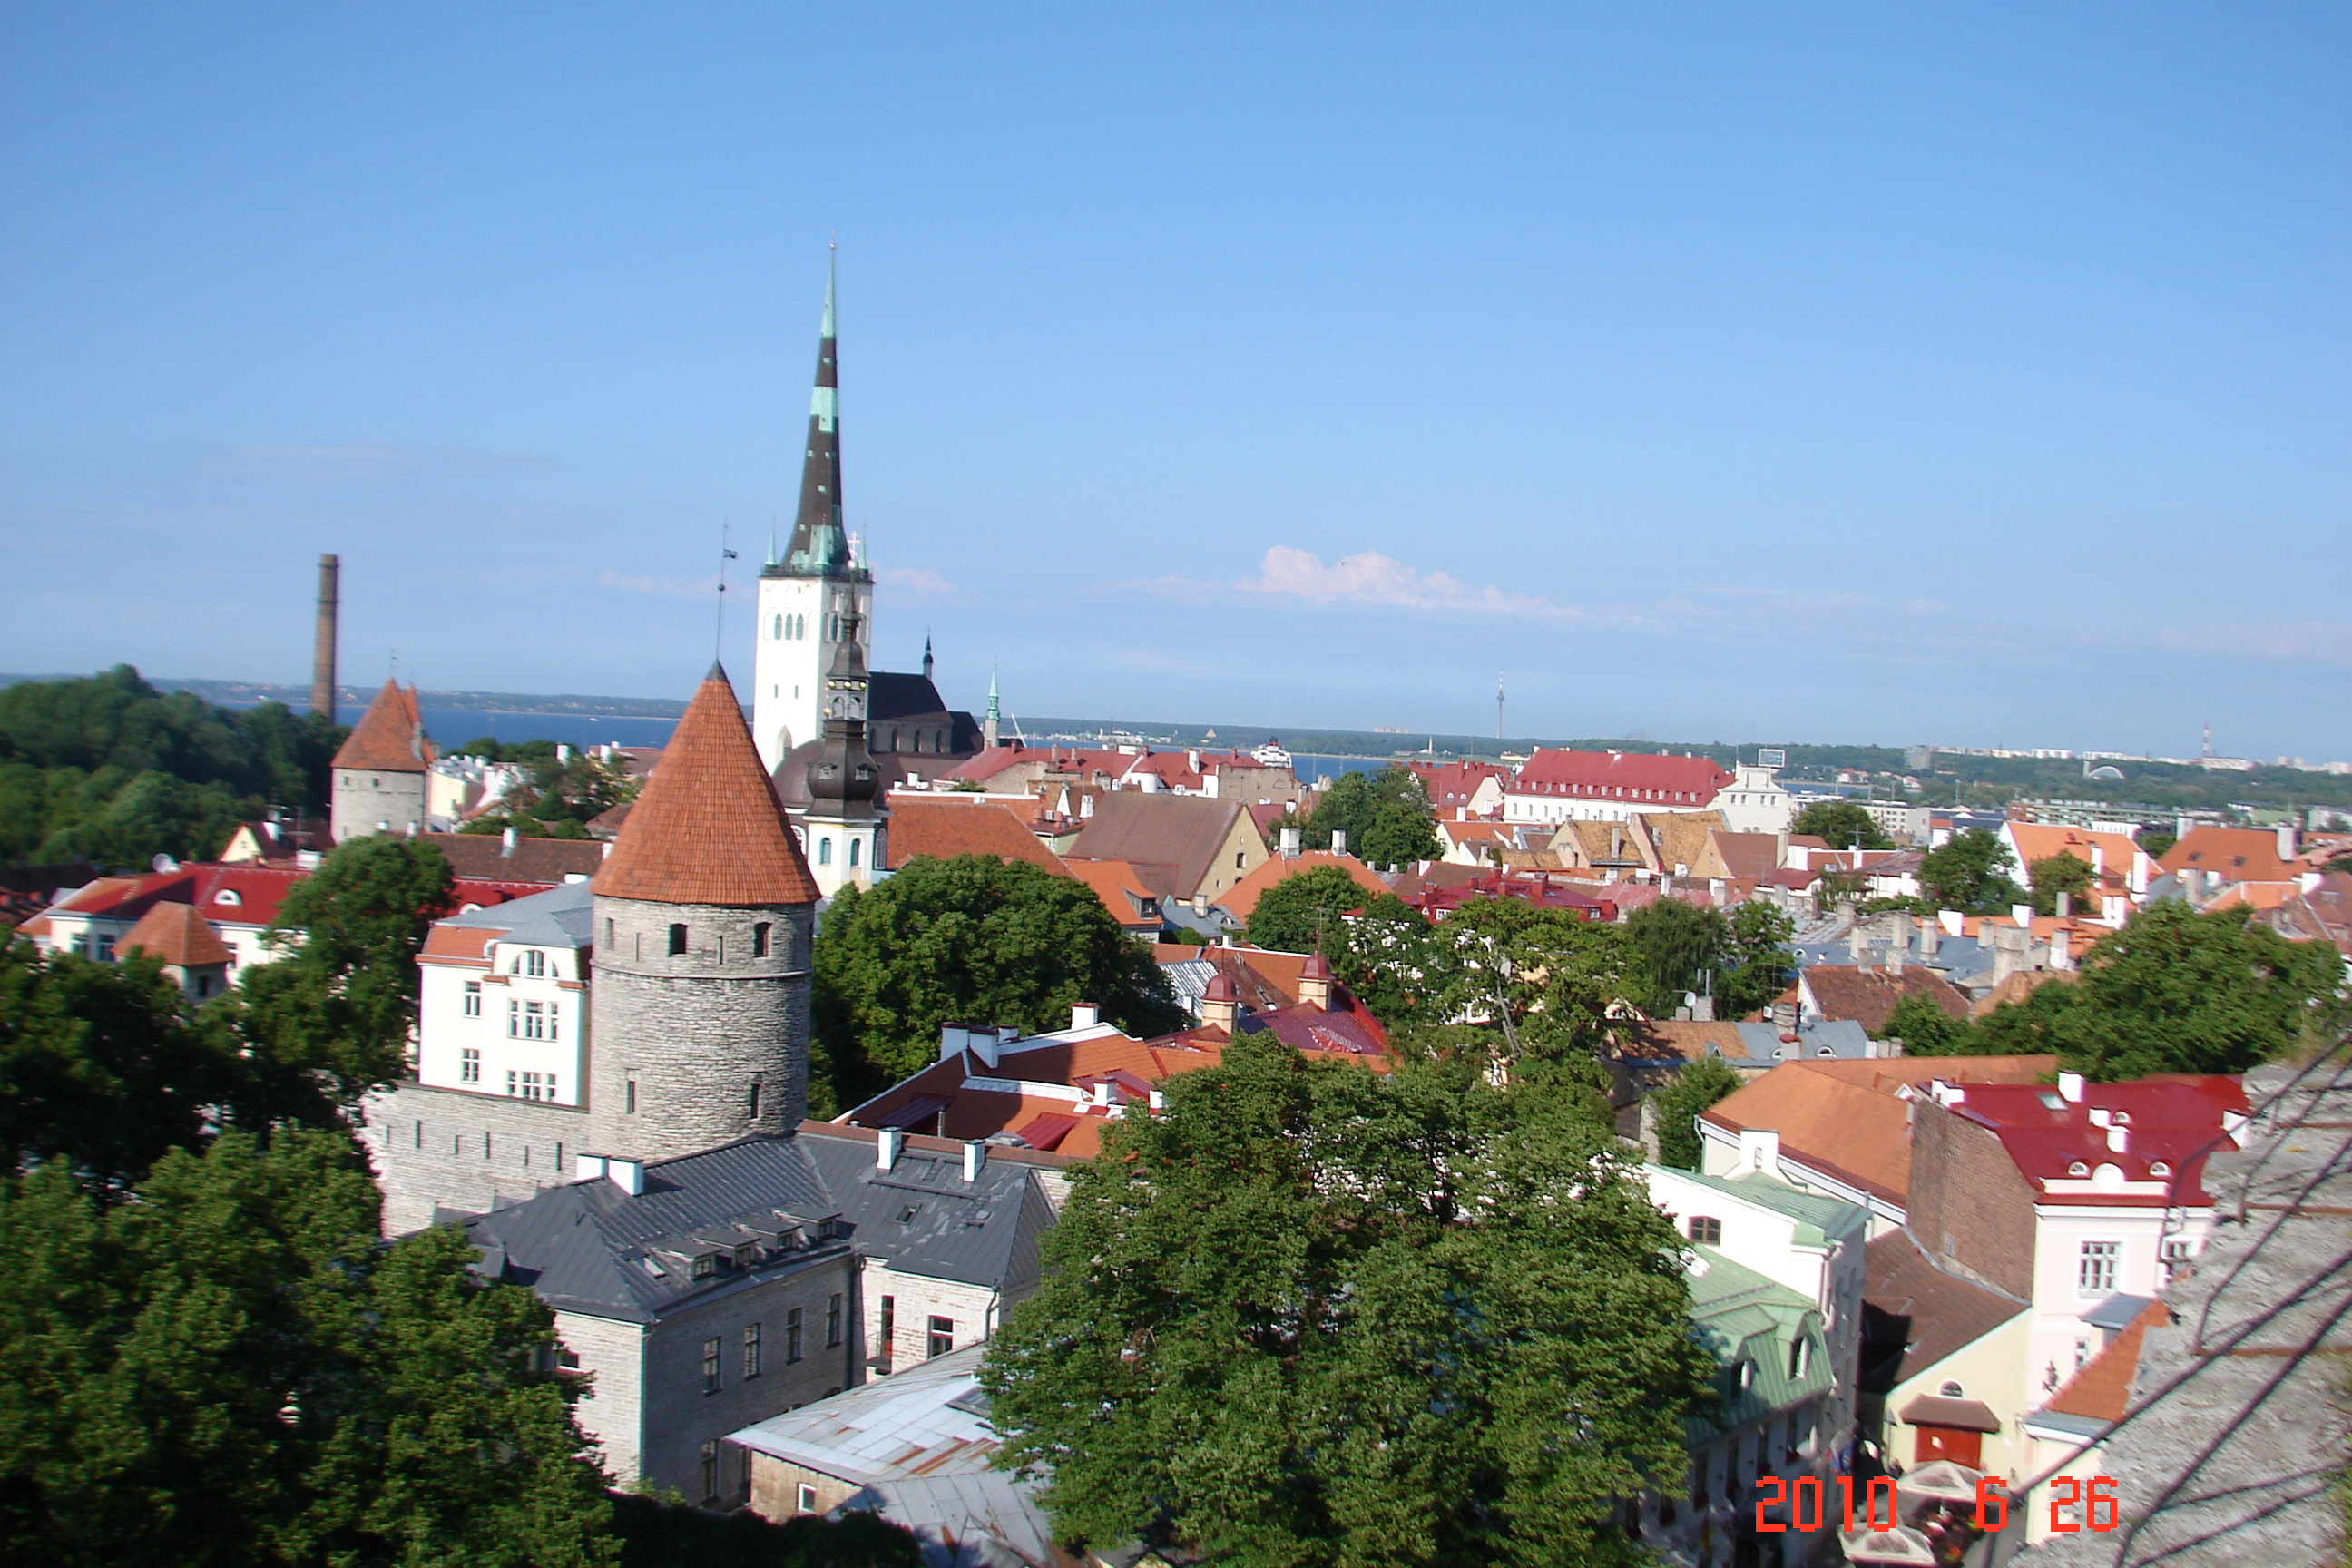 A tourist's take on Tallin, the charming capital of Estonia2592 x 1728